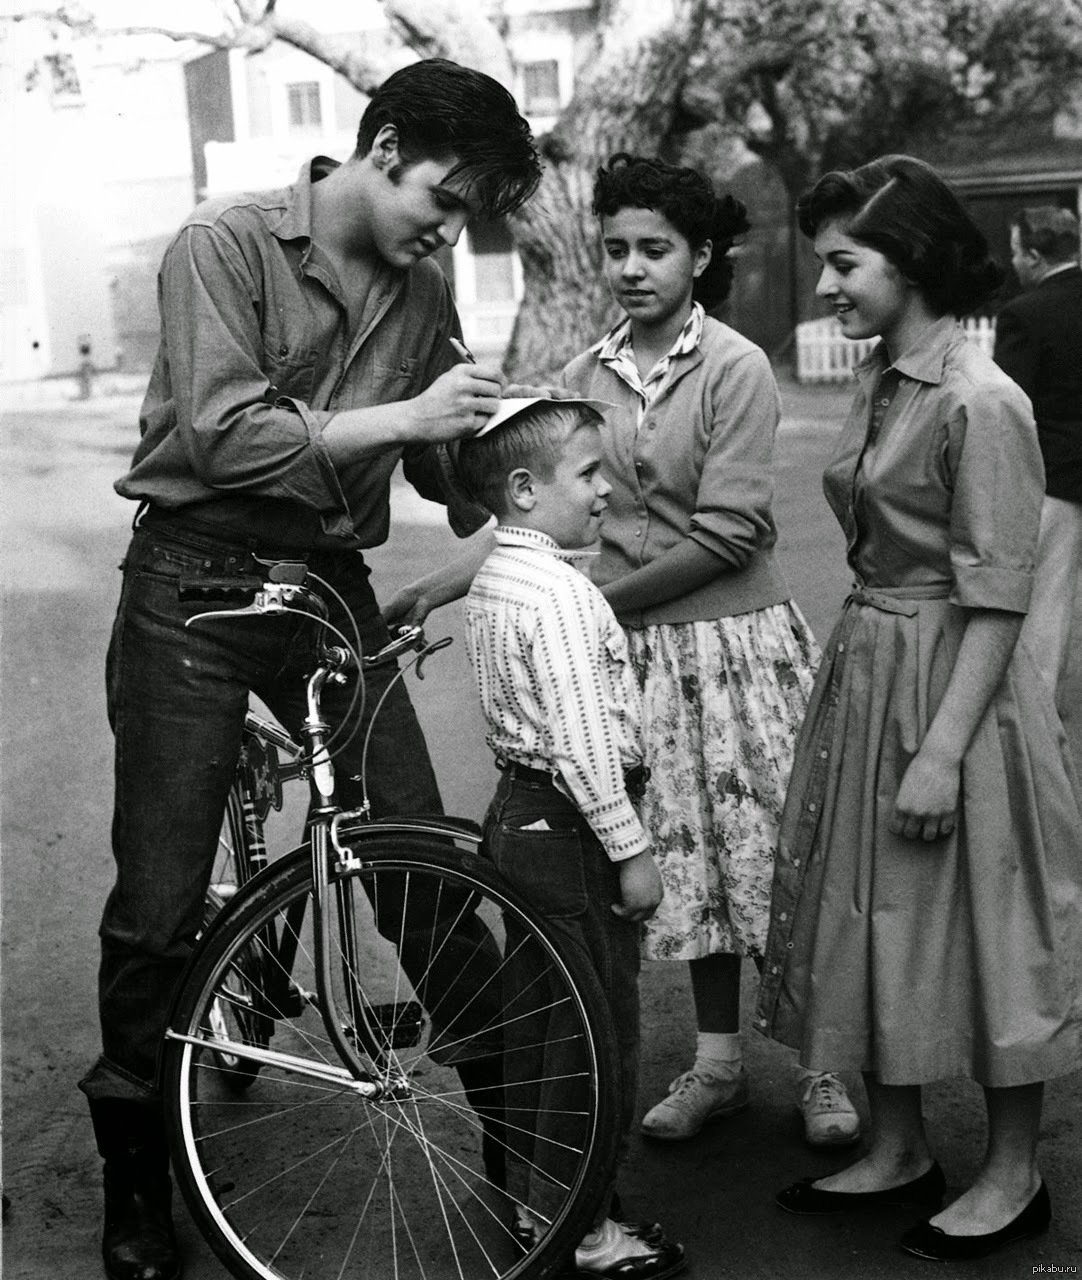 6. Elvis Presley in Germany 1959